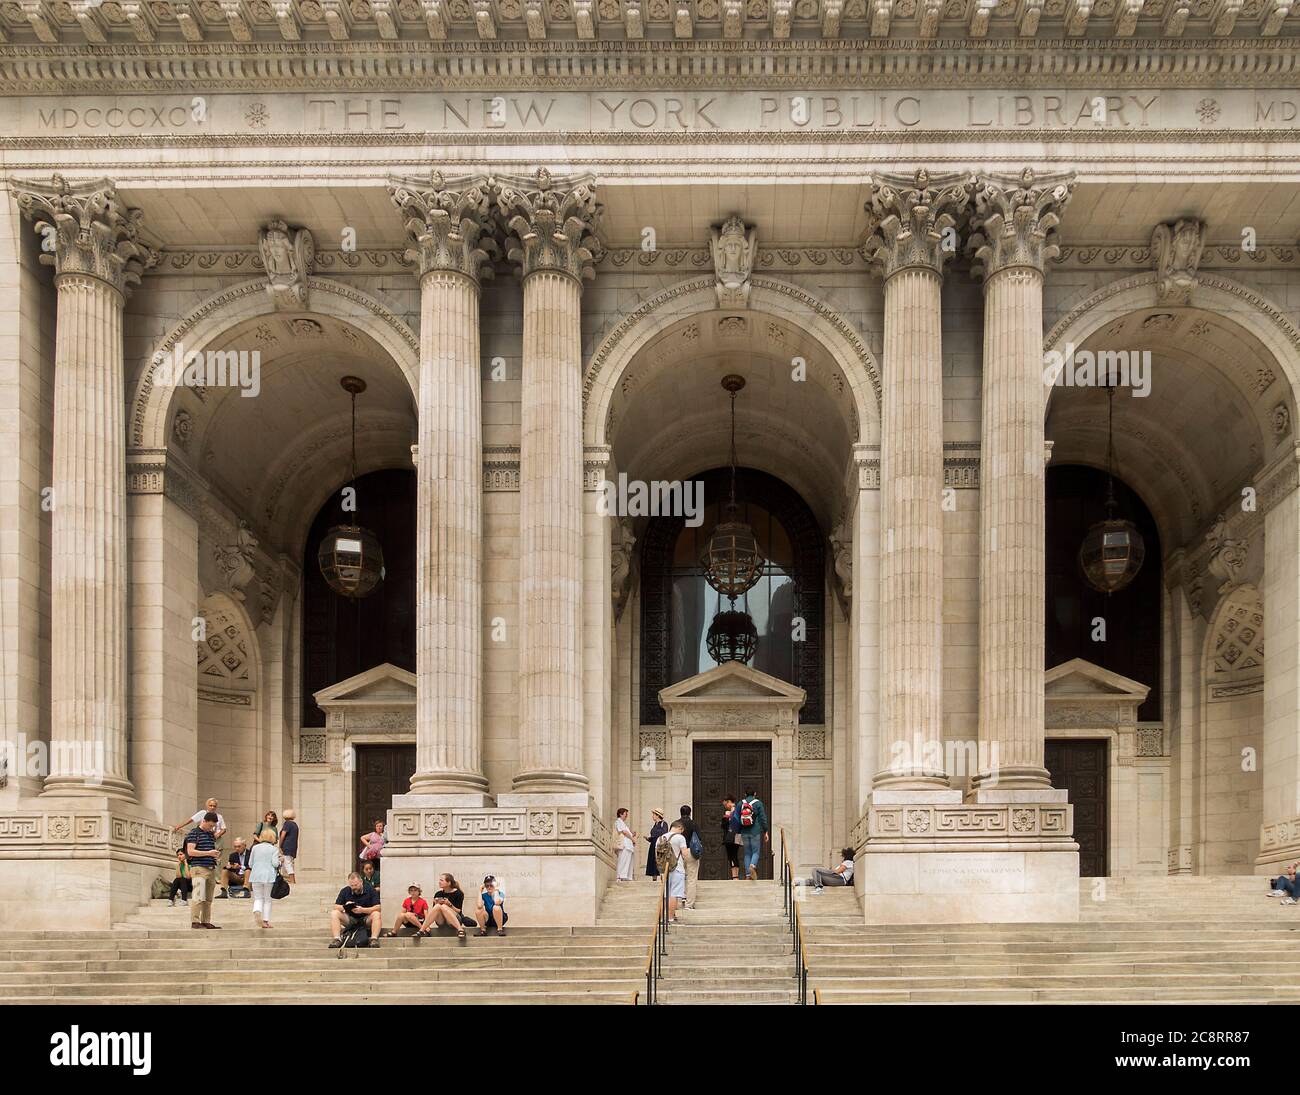 Extérieur de la bibliothèque publique de New York, Stephen A. Schwarzman Building, 5th Avenue, Manhattan, New York, Etats-Unis Banque D'Images